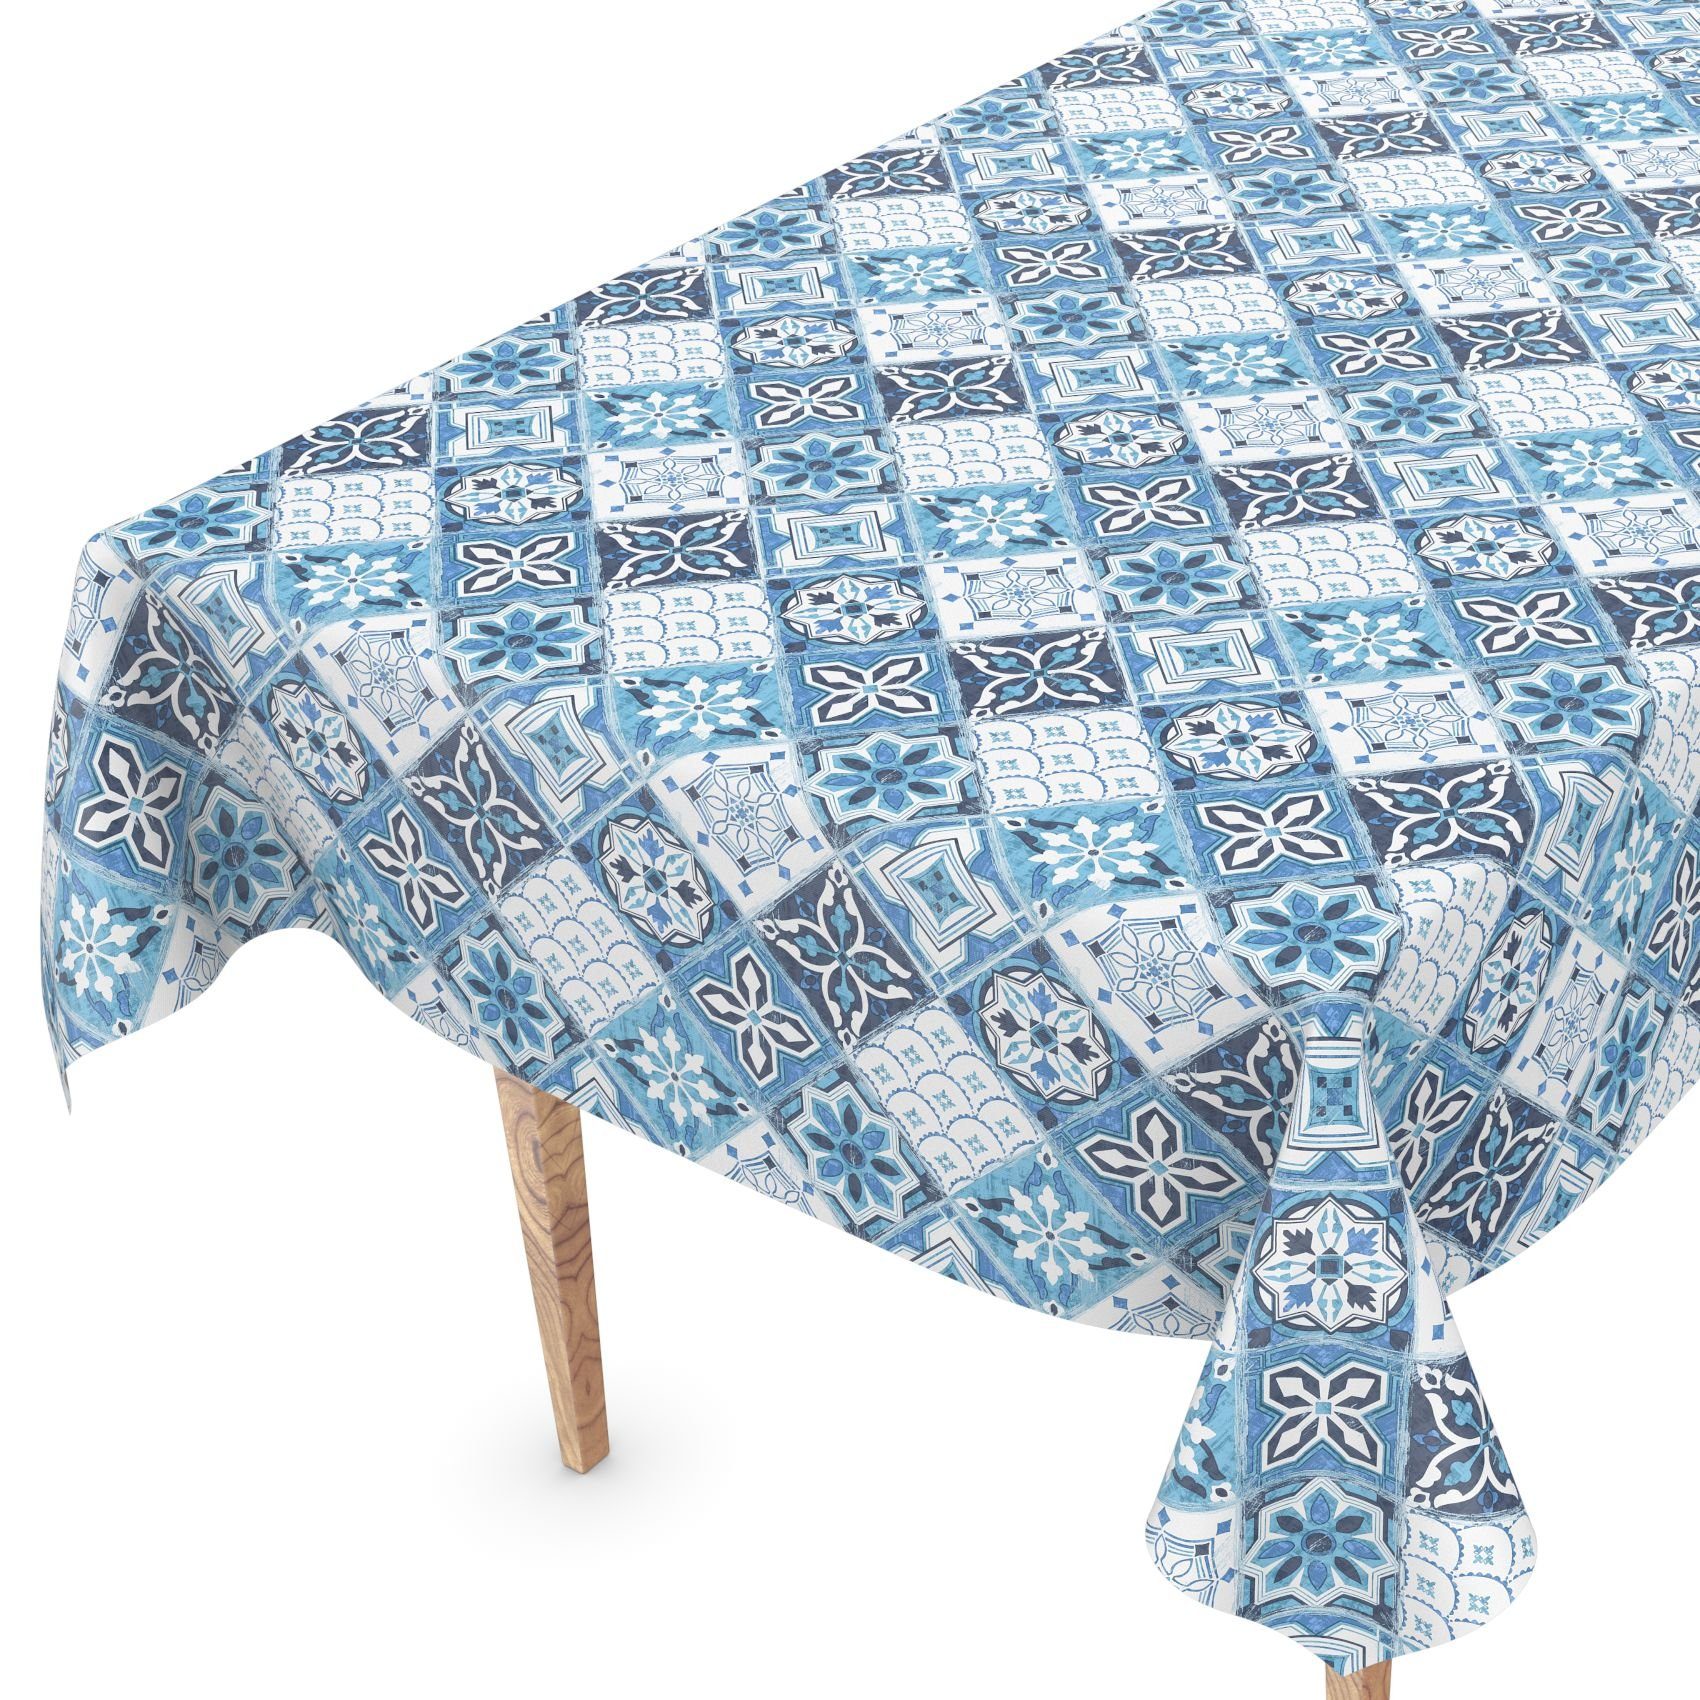 ANRO Tischdecke Tischdecke Wachstuch Retro Blau Robust Wasserabweisend Breite 140 cm, Geprägt